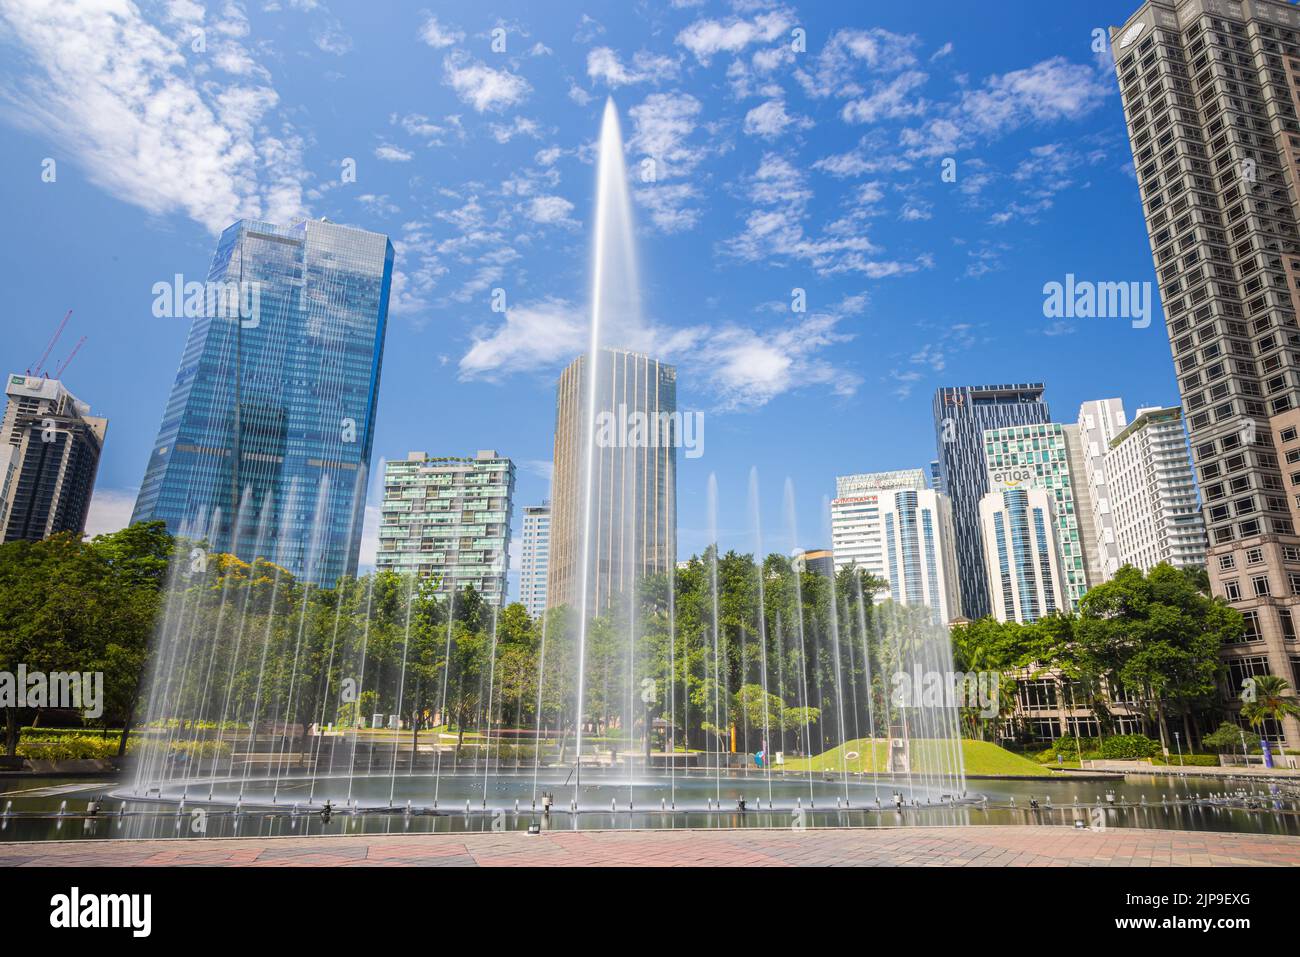 Kuala Lumpur, Malaisie - 13 août 2022: Le parc KLCC avec le spectacle de la fontaine en face des tours Petronas. Exposition longue avec de l'eau soyeuse j Banque D'Images